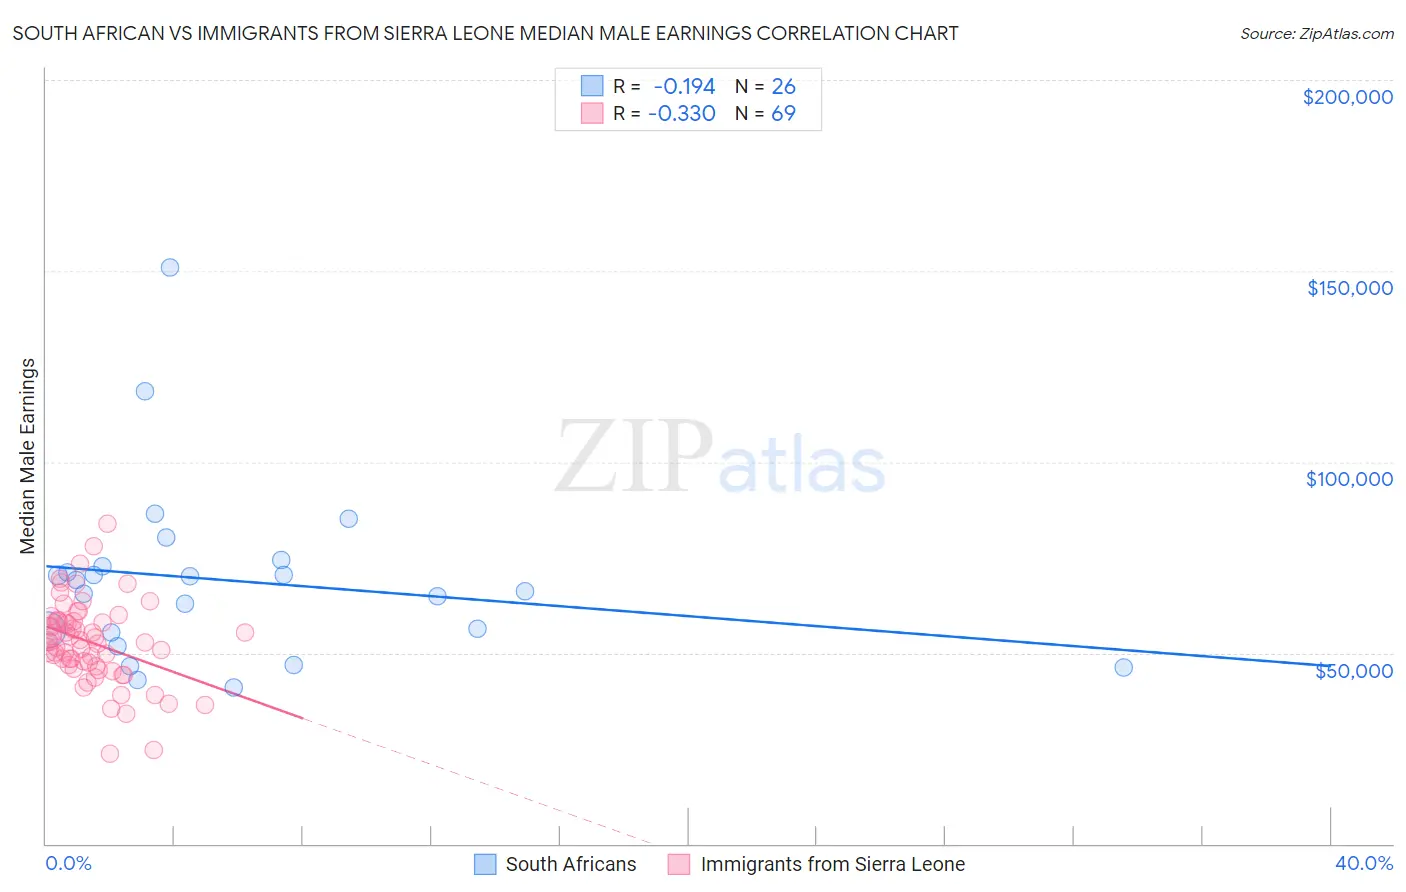 South African vs Immigrants from Sierra Leone Median Male Earnings